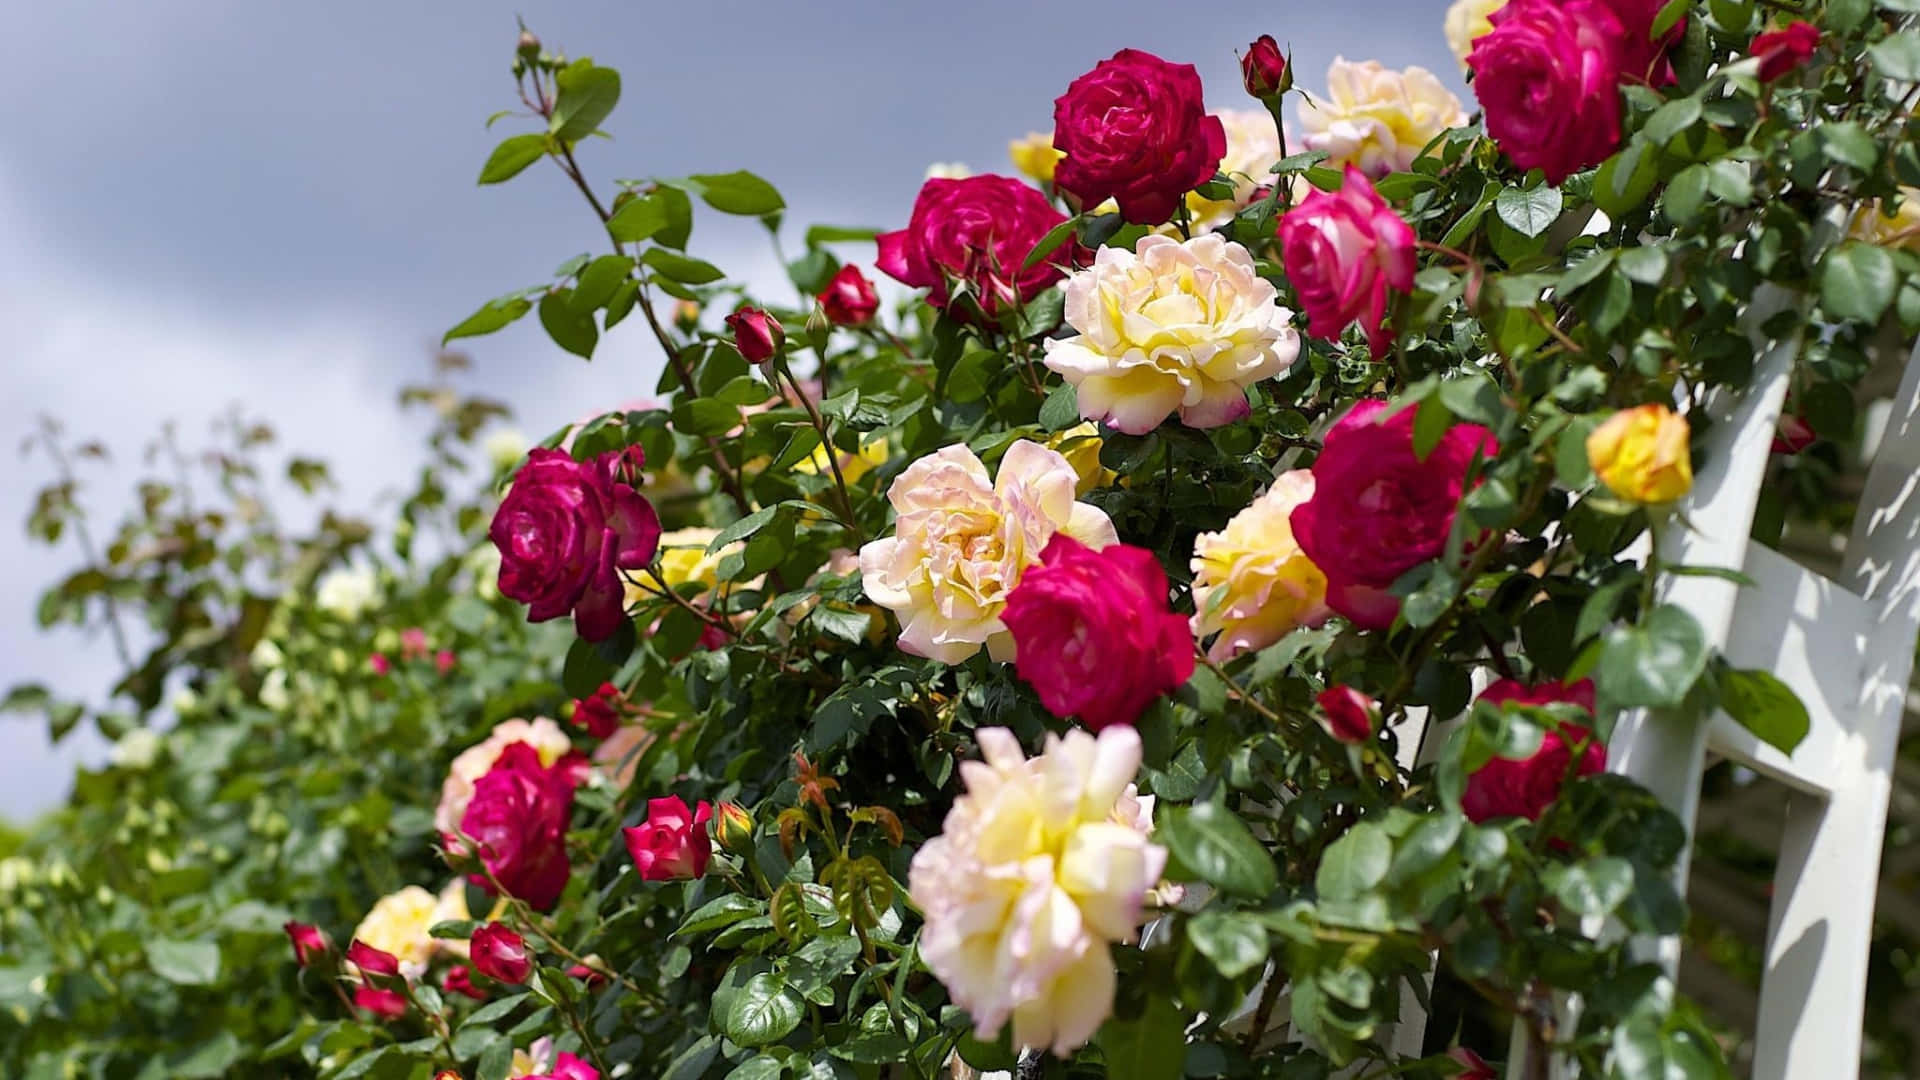 Rosada Giardino, Immagine Di Un Cespuglio Di Rose Rosa E Bianche.